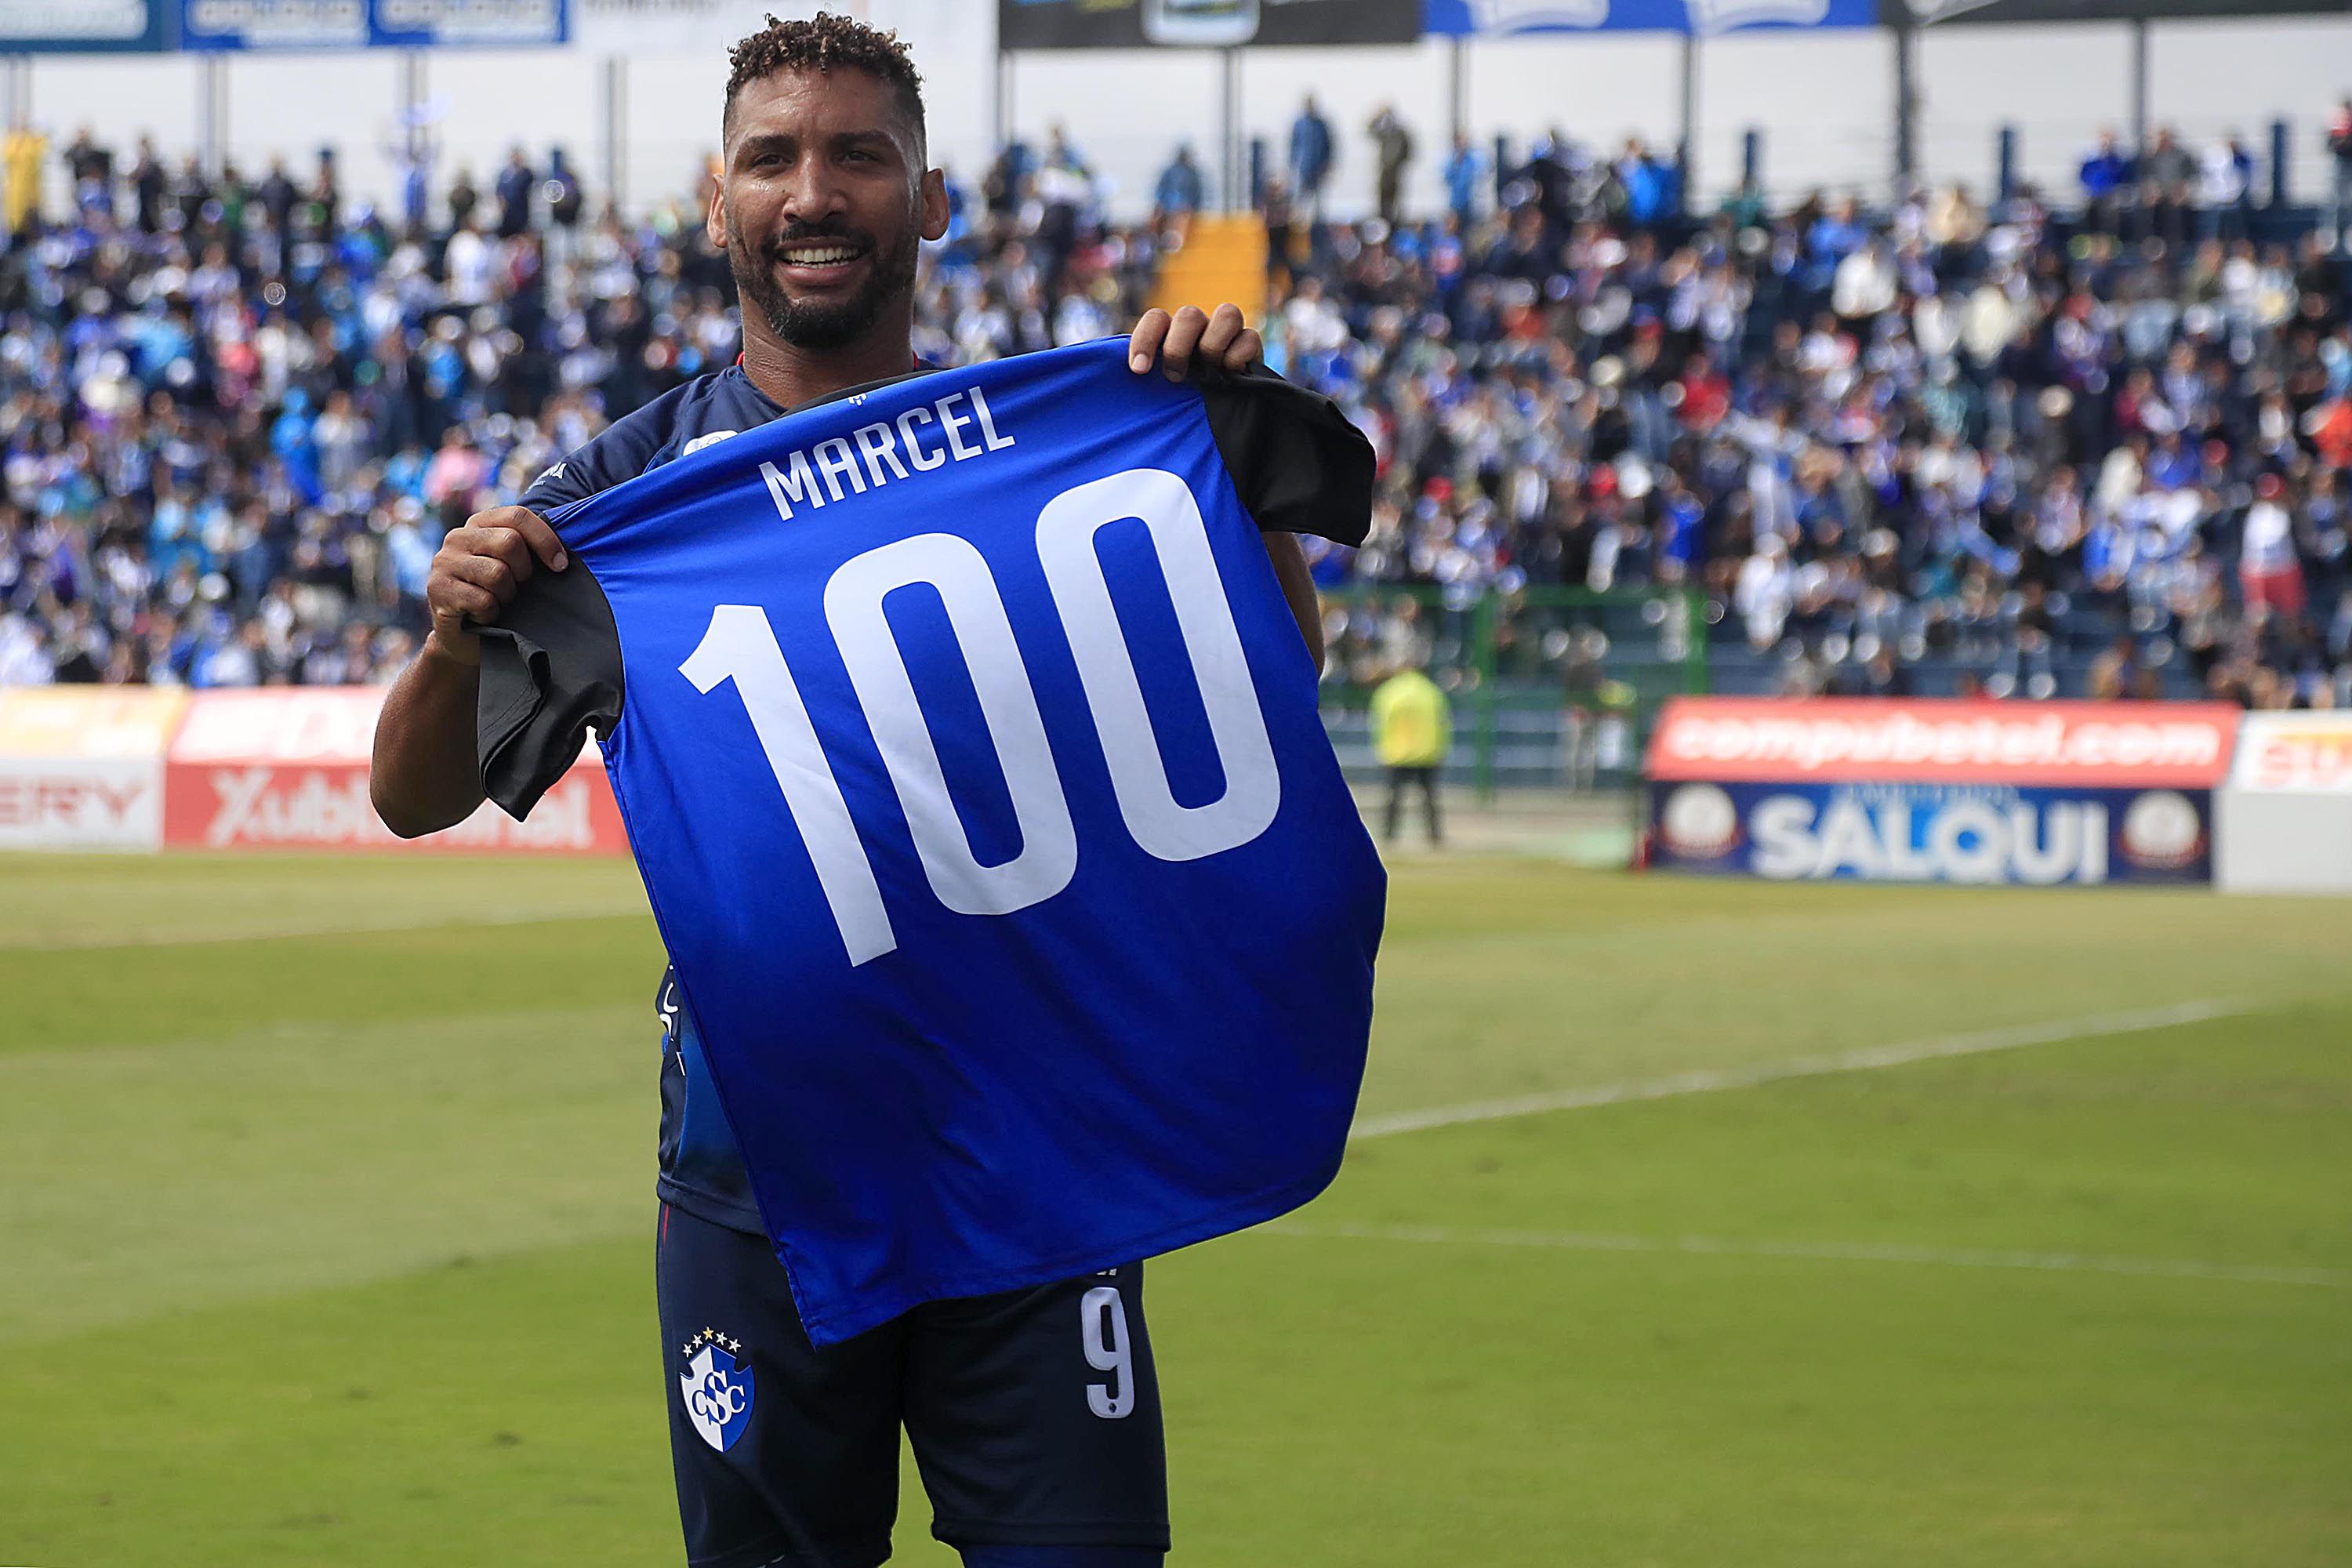 Marcel Hernández tenía preparada una camiseta con el 100, para celebrar el histórico gol que consiguió con Cartaginés. 